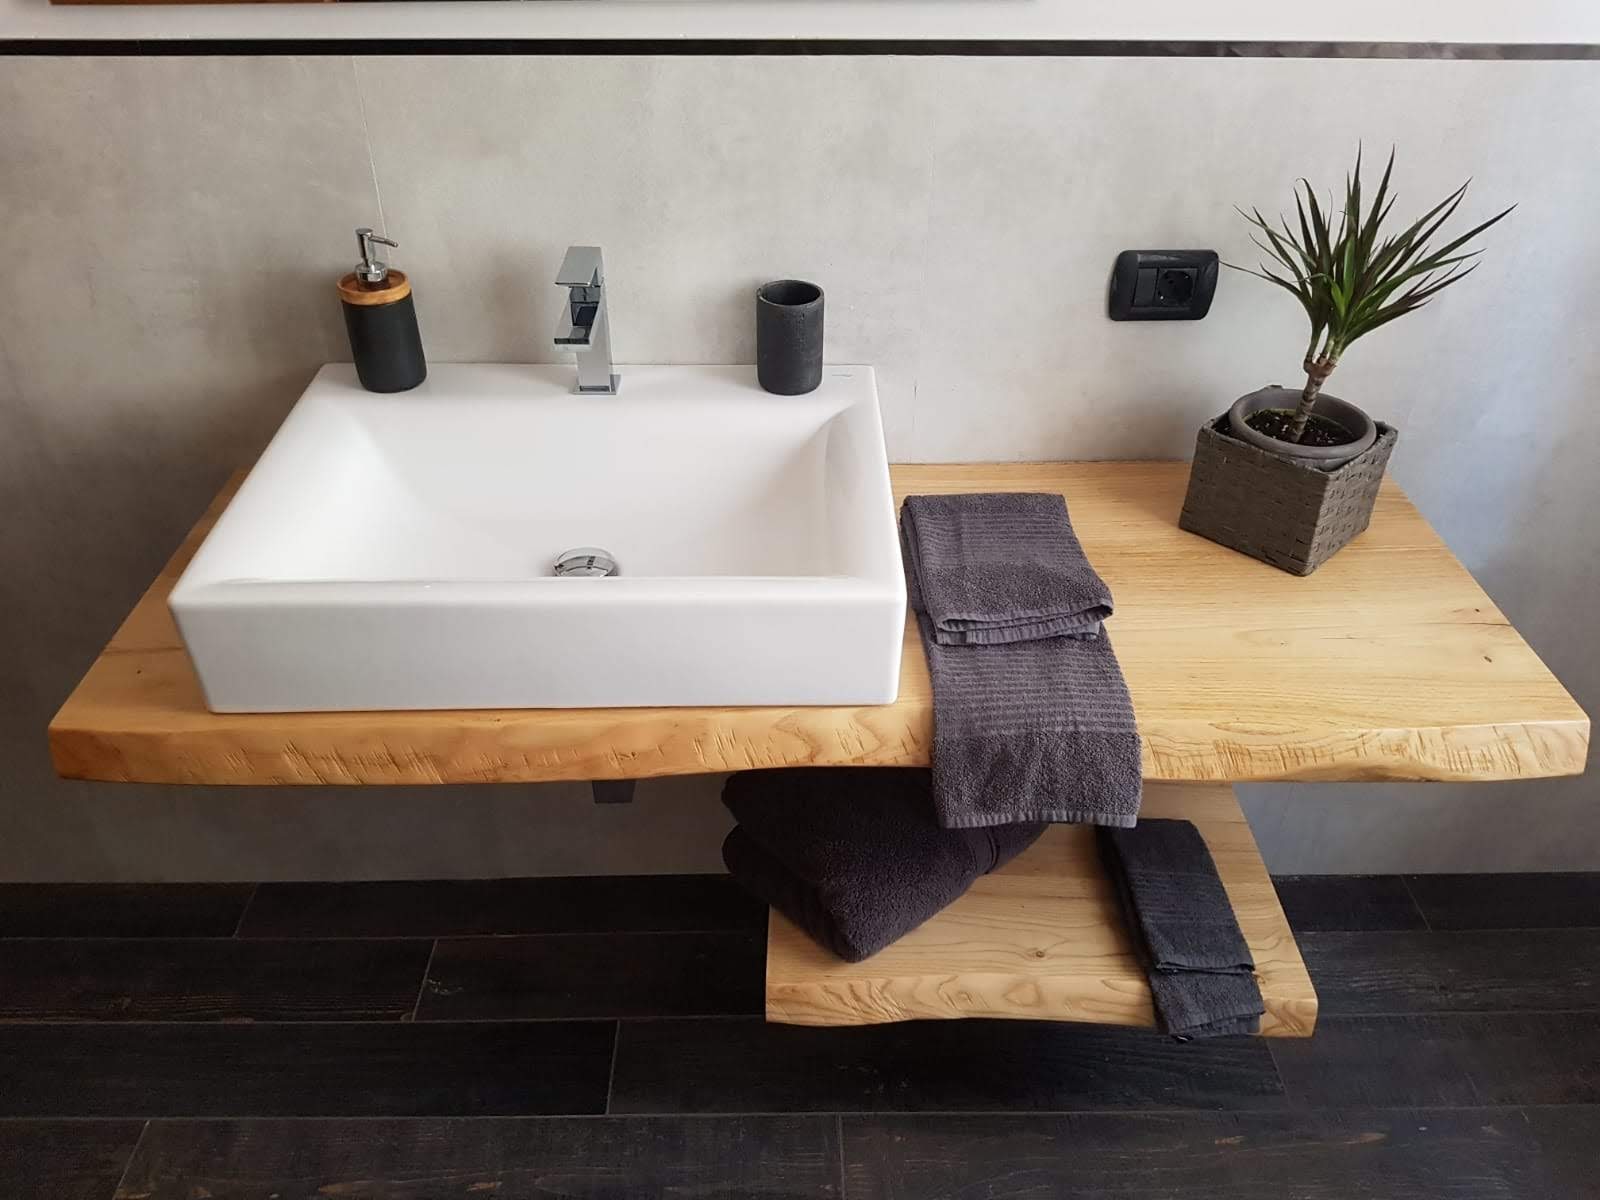 Top bagno legno massello piani lavabo: ultime novità per arredare il bagno